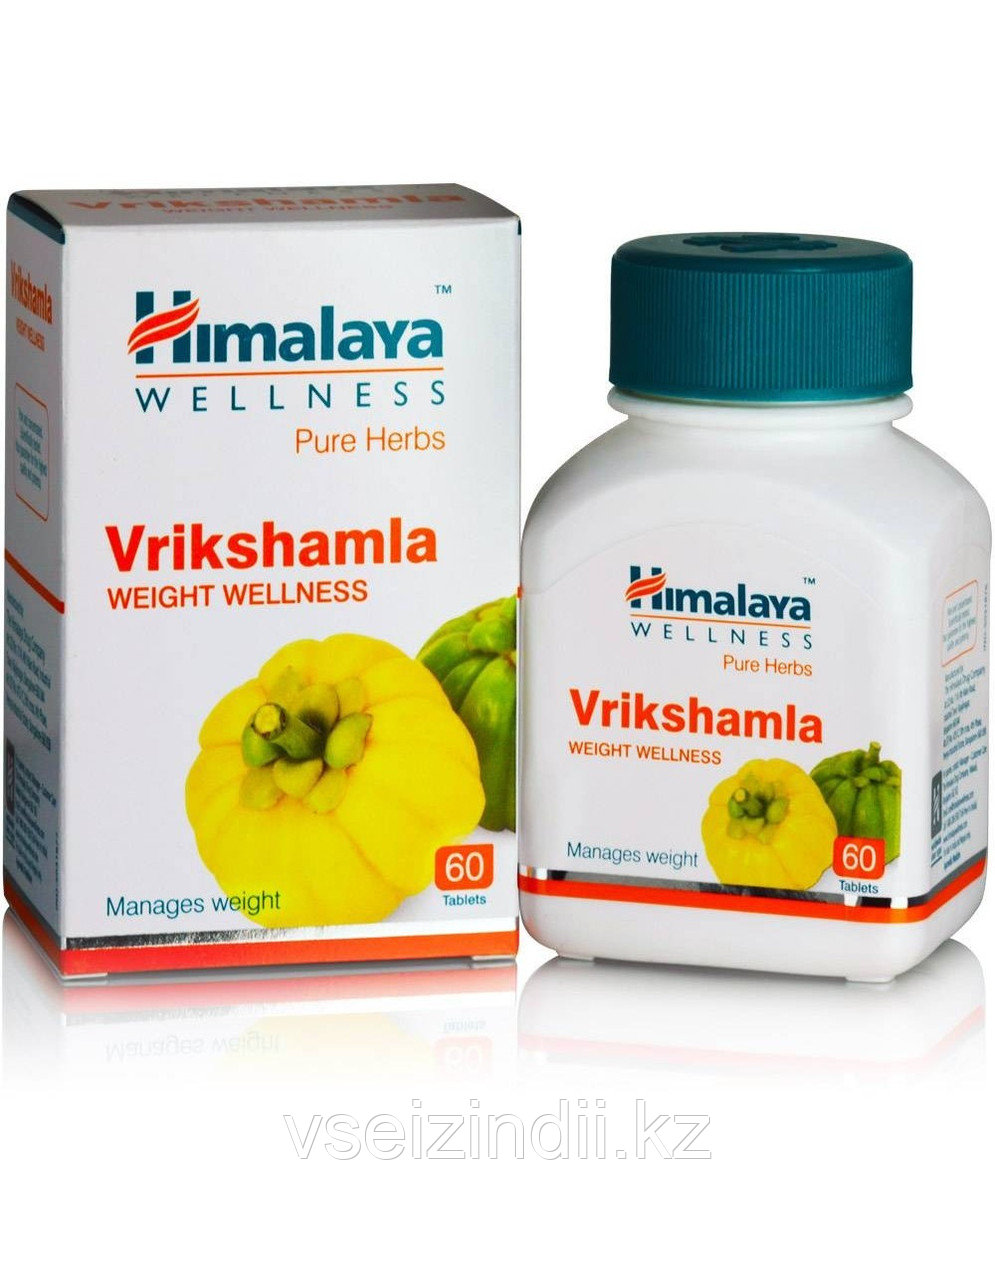 Врикшамла, Гималаи (Vrikshamla, Himalaya), 60 табл, ожирение, лишний вес, сжигание жира, холестерин, похудение